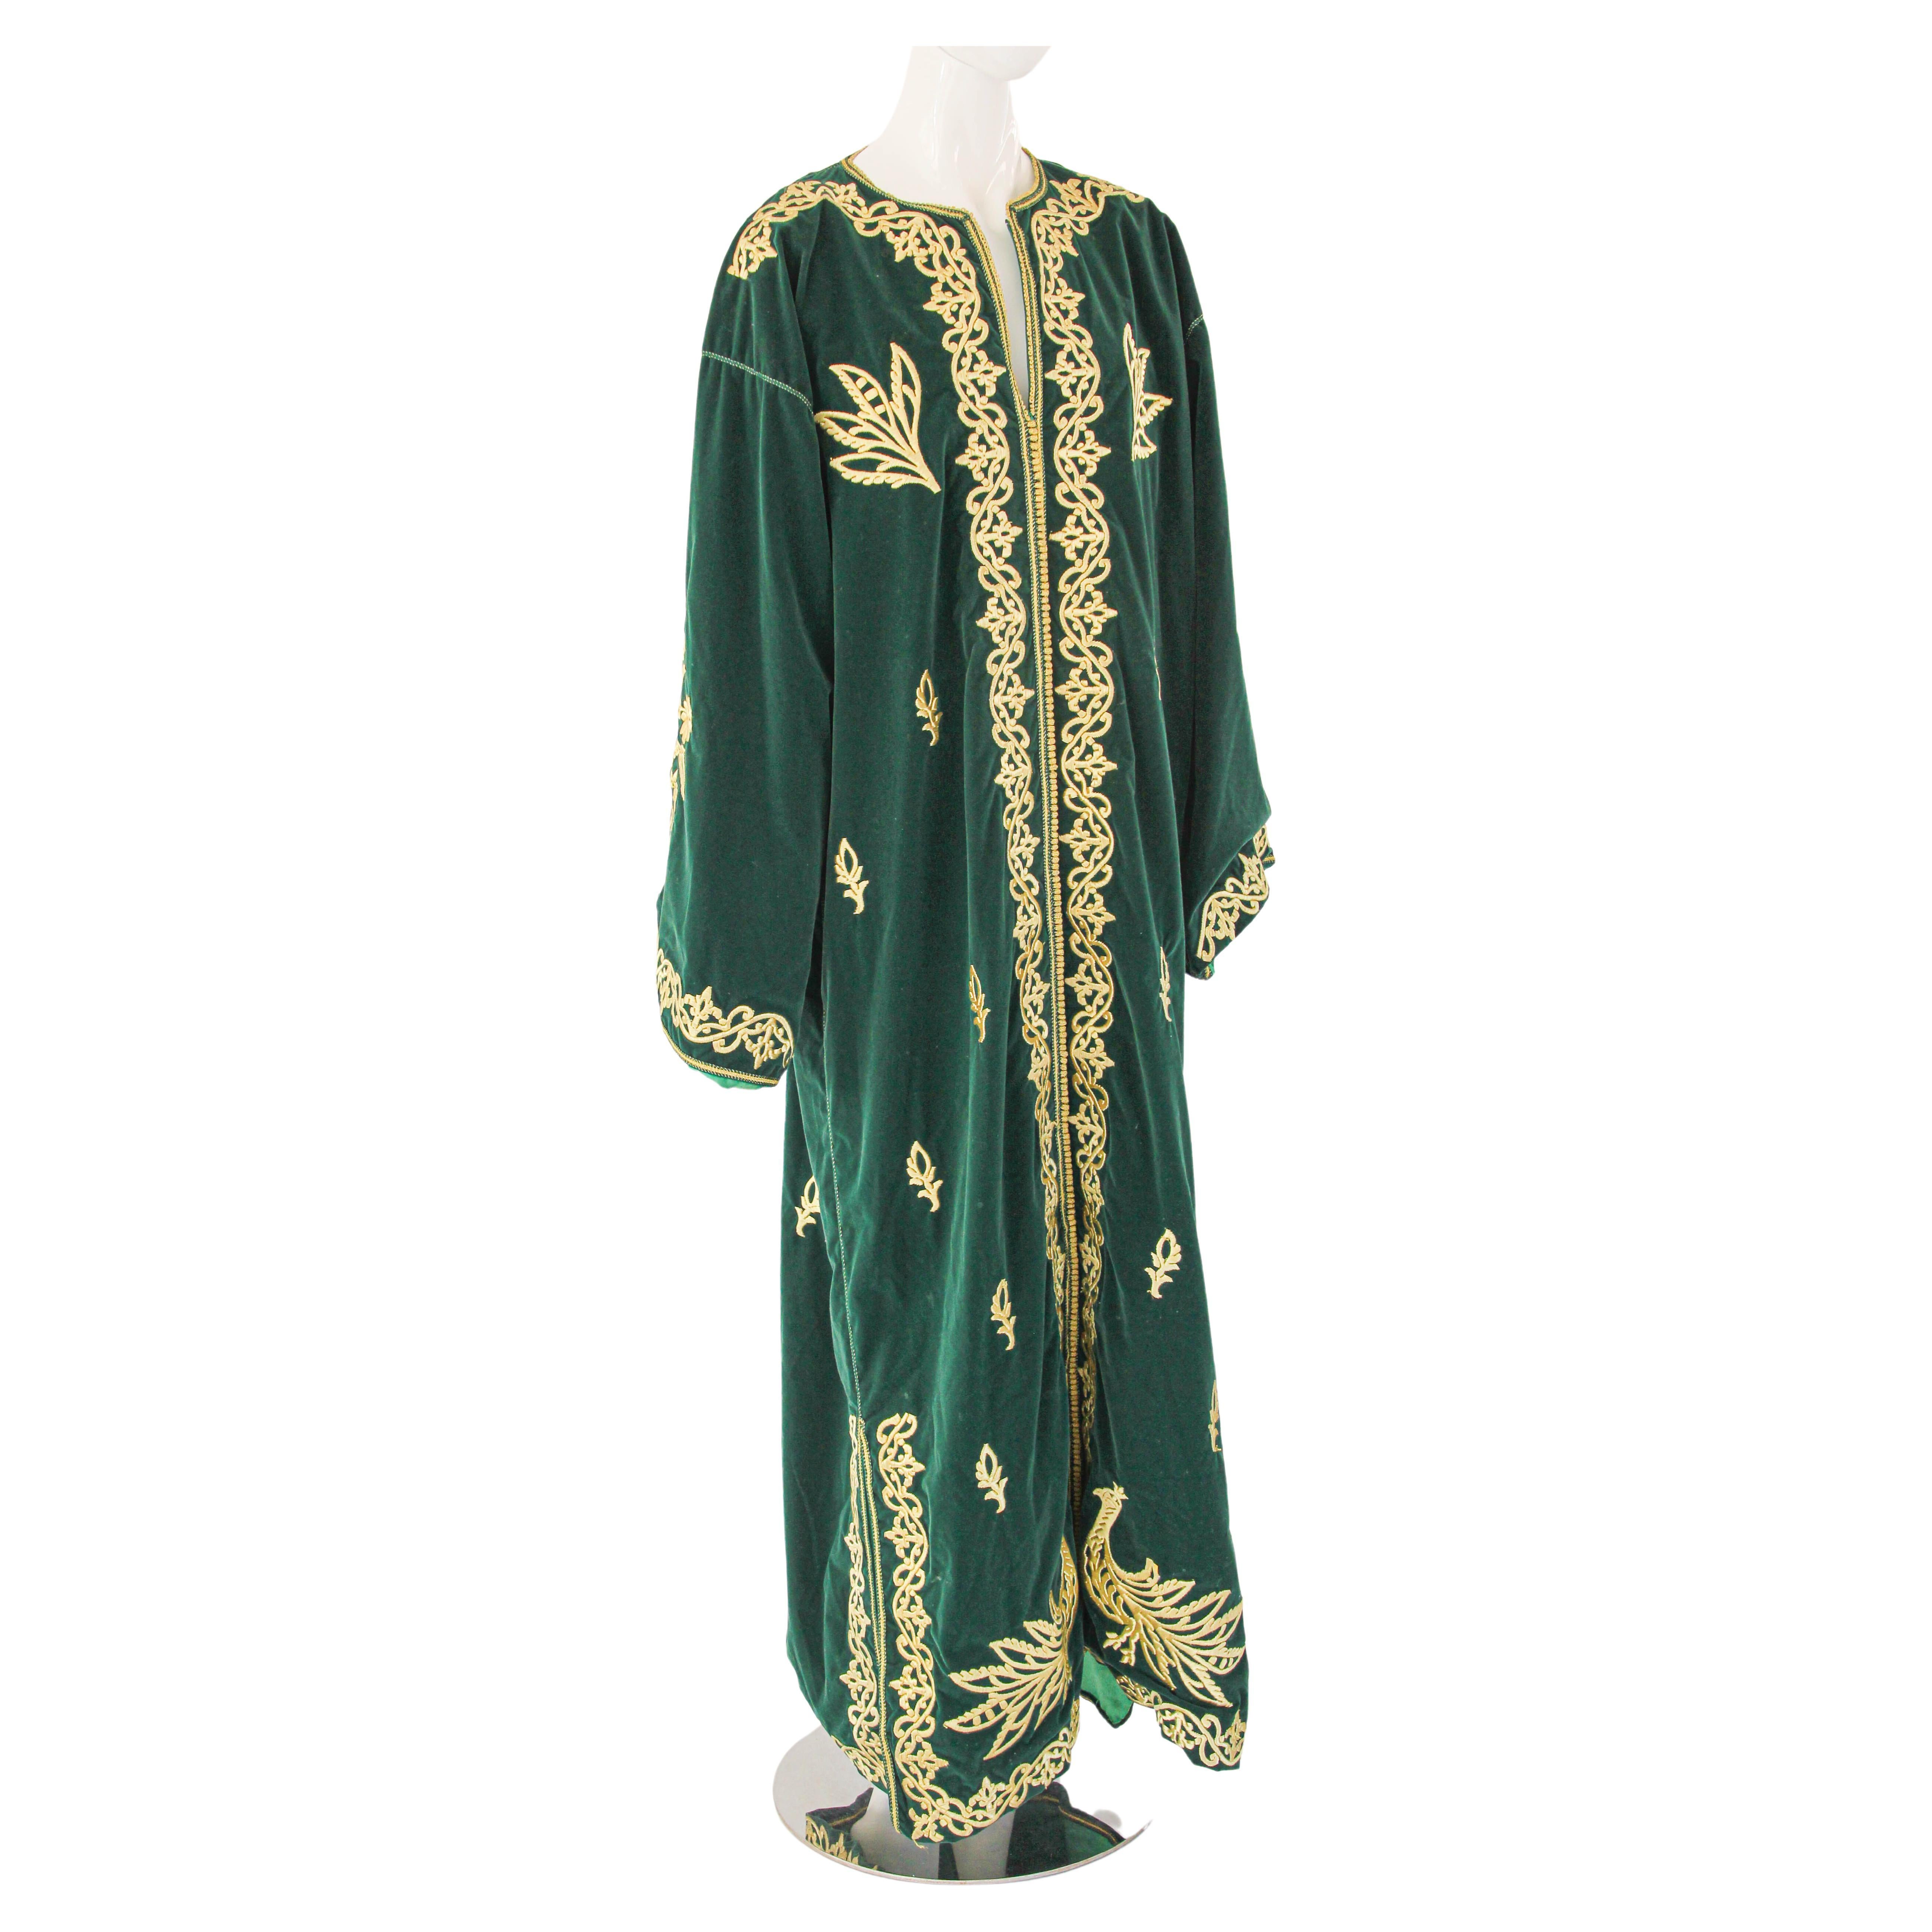 1960er Vintage Marokkanischer Samt Kaftan Smaragdgrün und Goldfaden. Größe XXL.
Dieses lange Maxikleid aus Samt ist vollständig von Hand bestickt und verschönert, mit Satin gefüttert.
Einzigartiges marokkanisches Abendkleid aus dem Nahen Osten.
Der